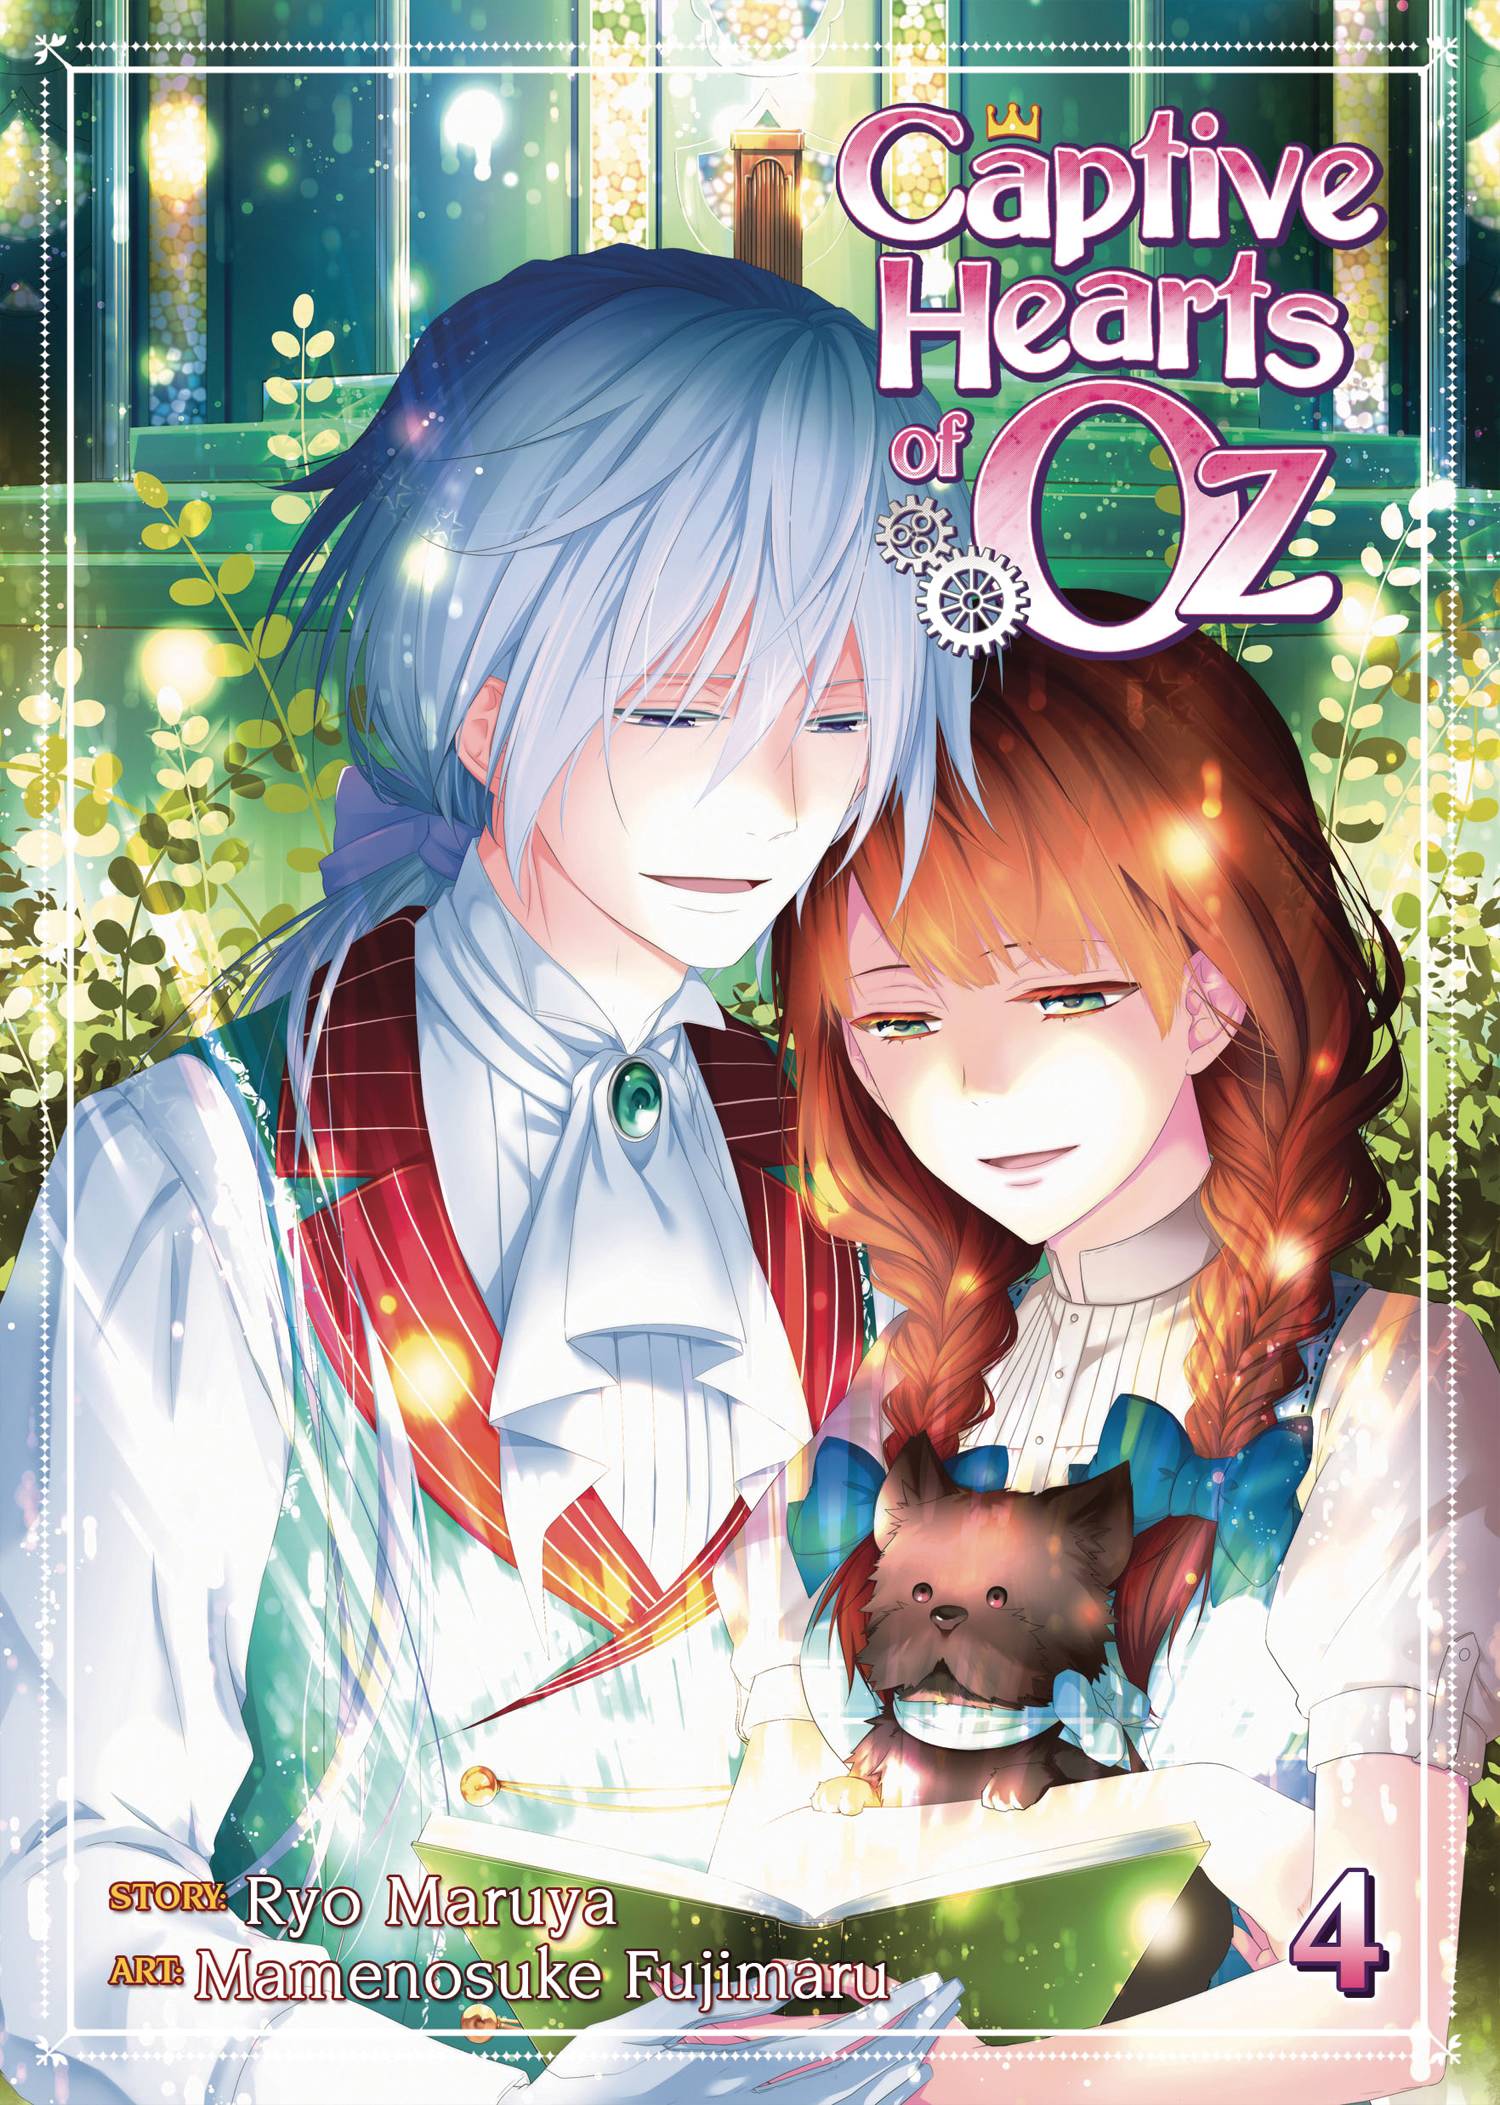 Captive Hearts of Oz Manga Volume 4